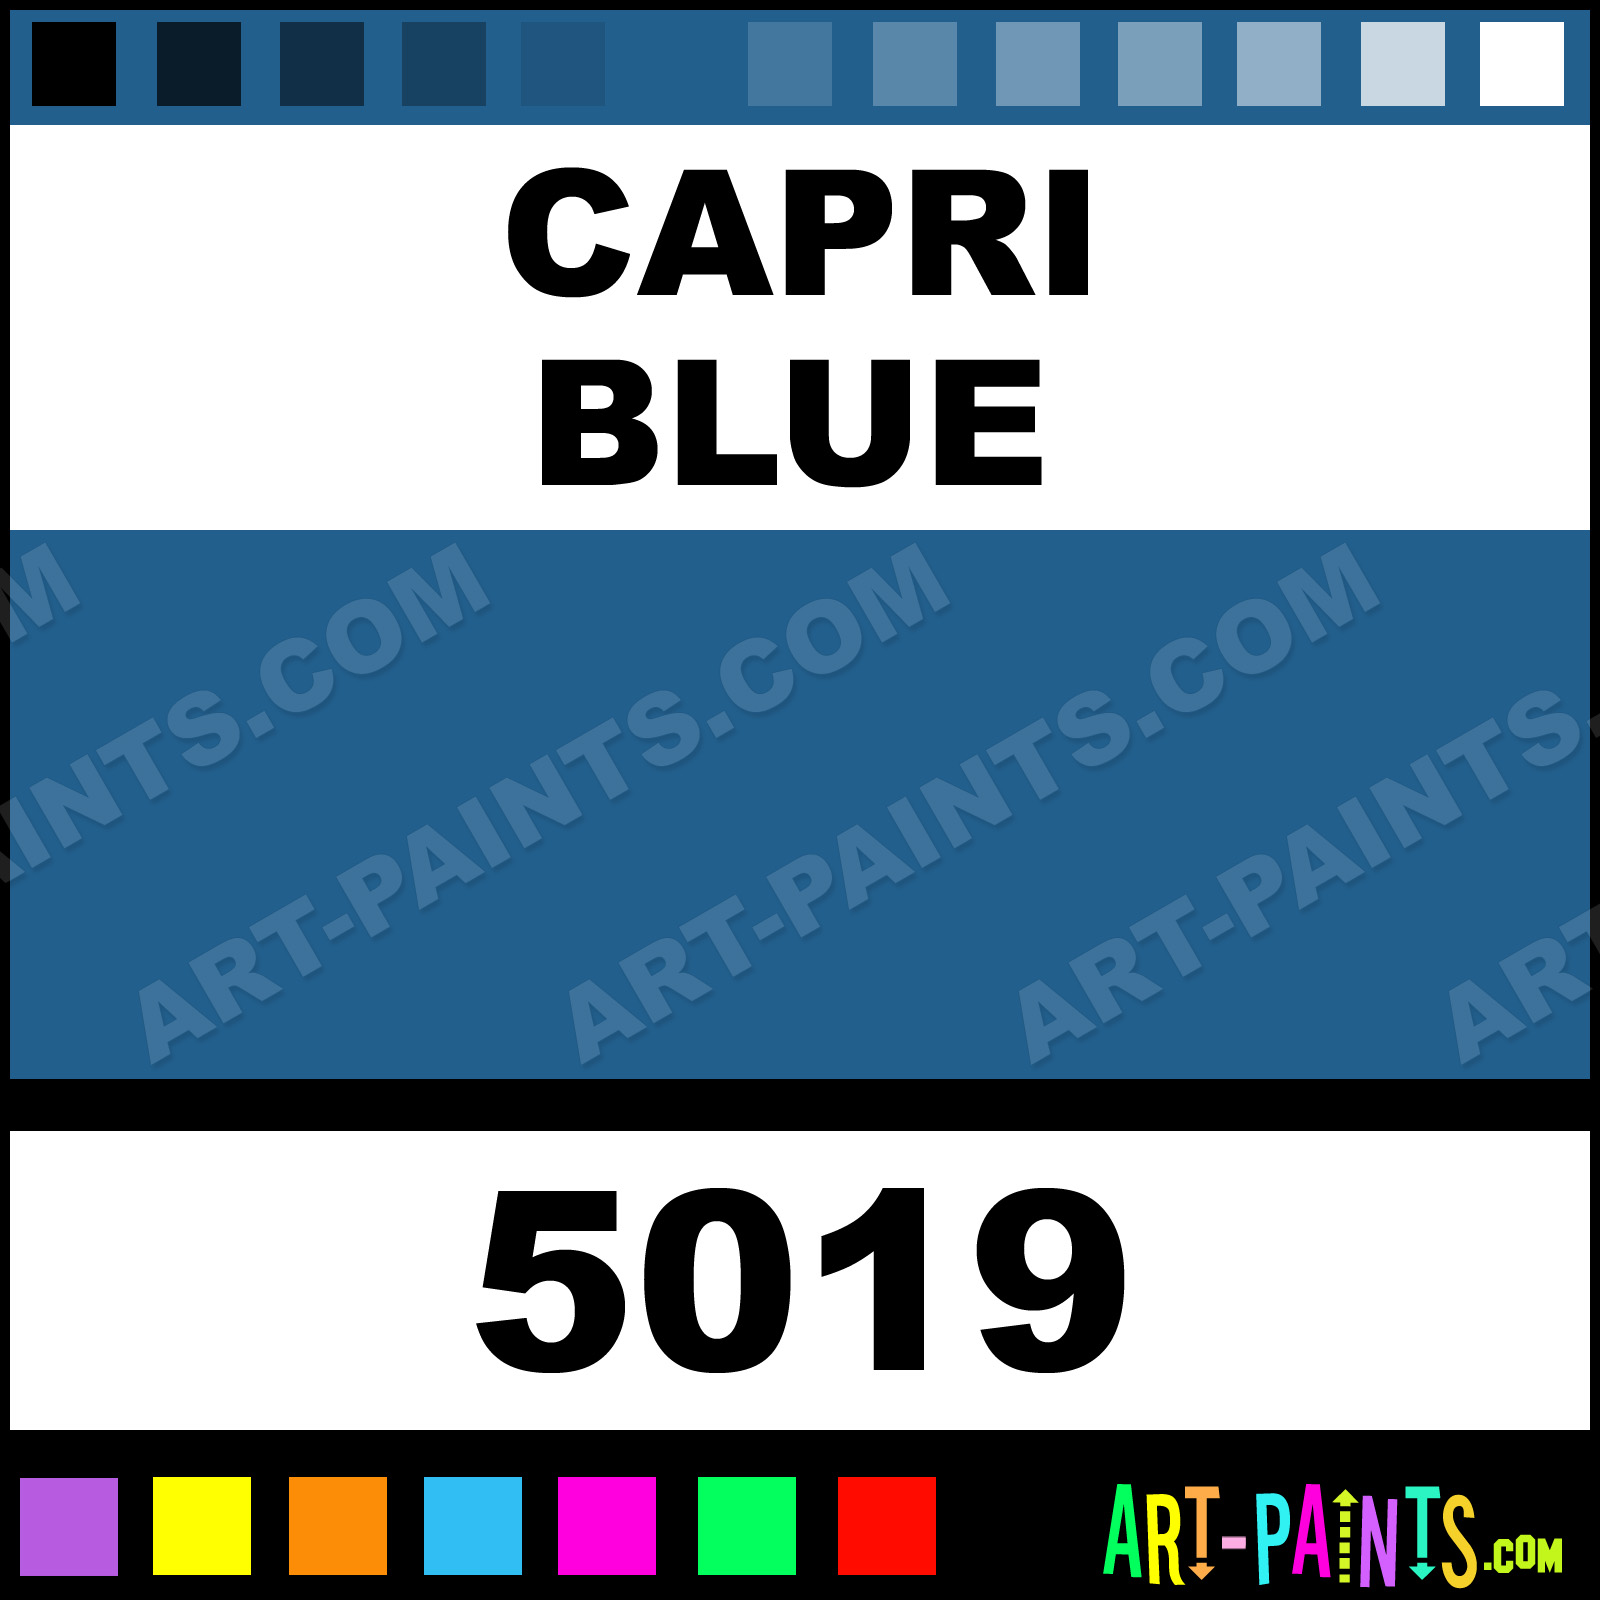 Capri Blue Glossy Acrylic Airbrush Spray Paints - 5019 - Capri Blue Paint,  Capri Blue Color, Sparvar Glossy Acrylic Spray Paint, 215E8D 